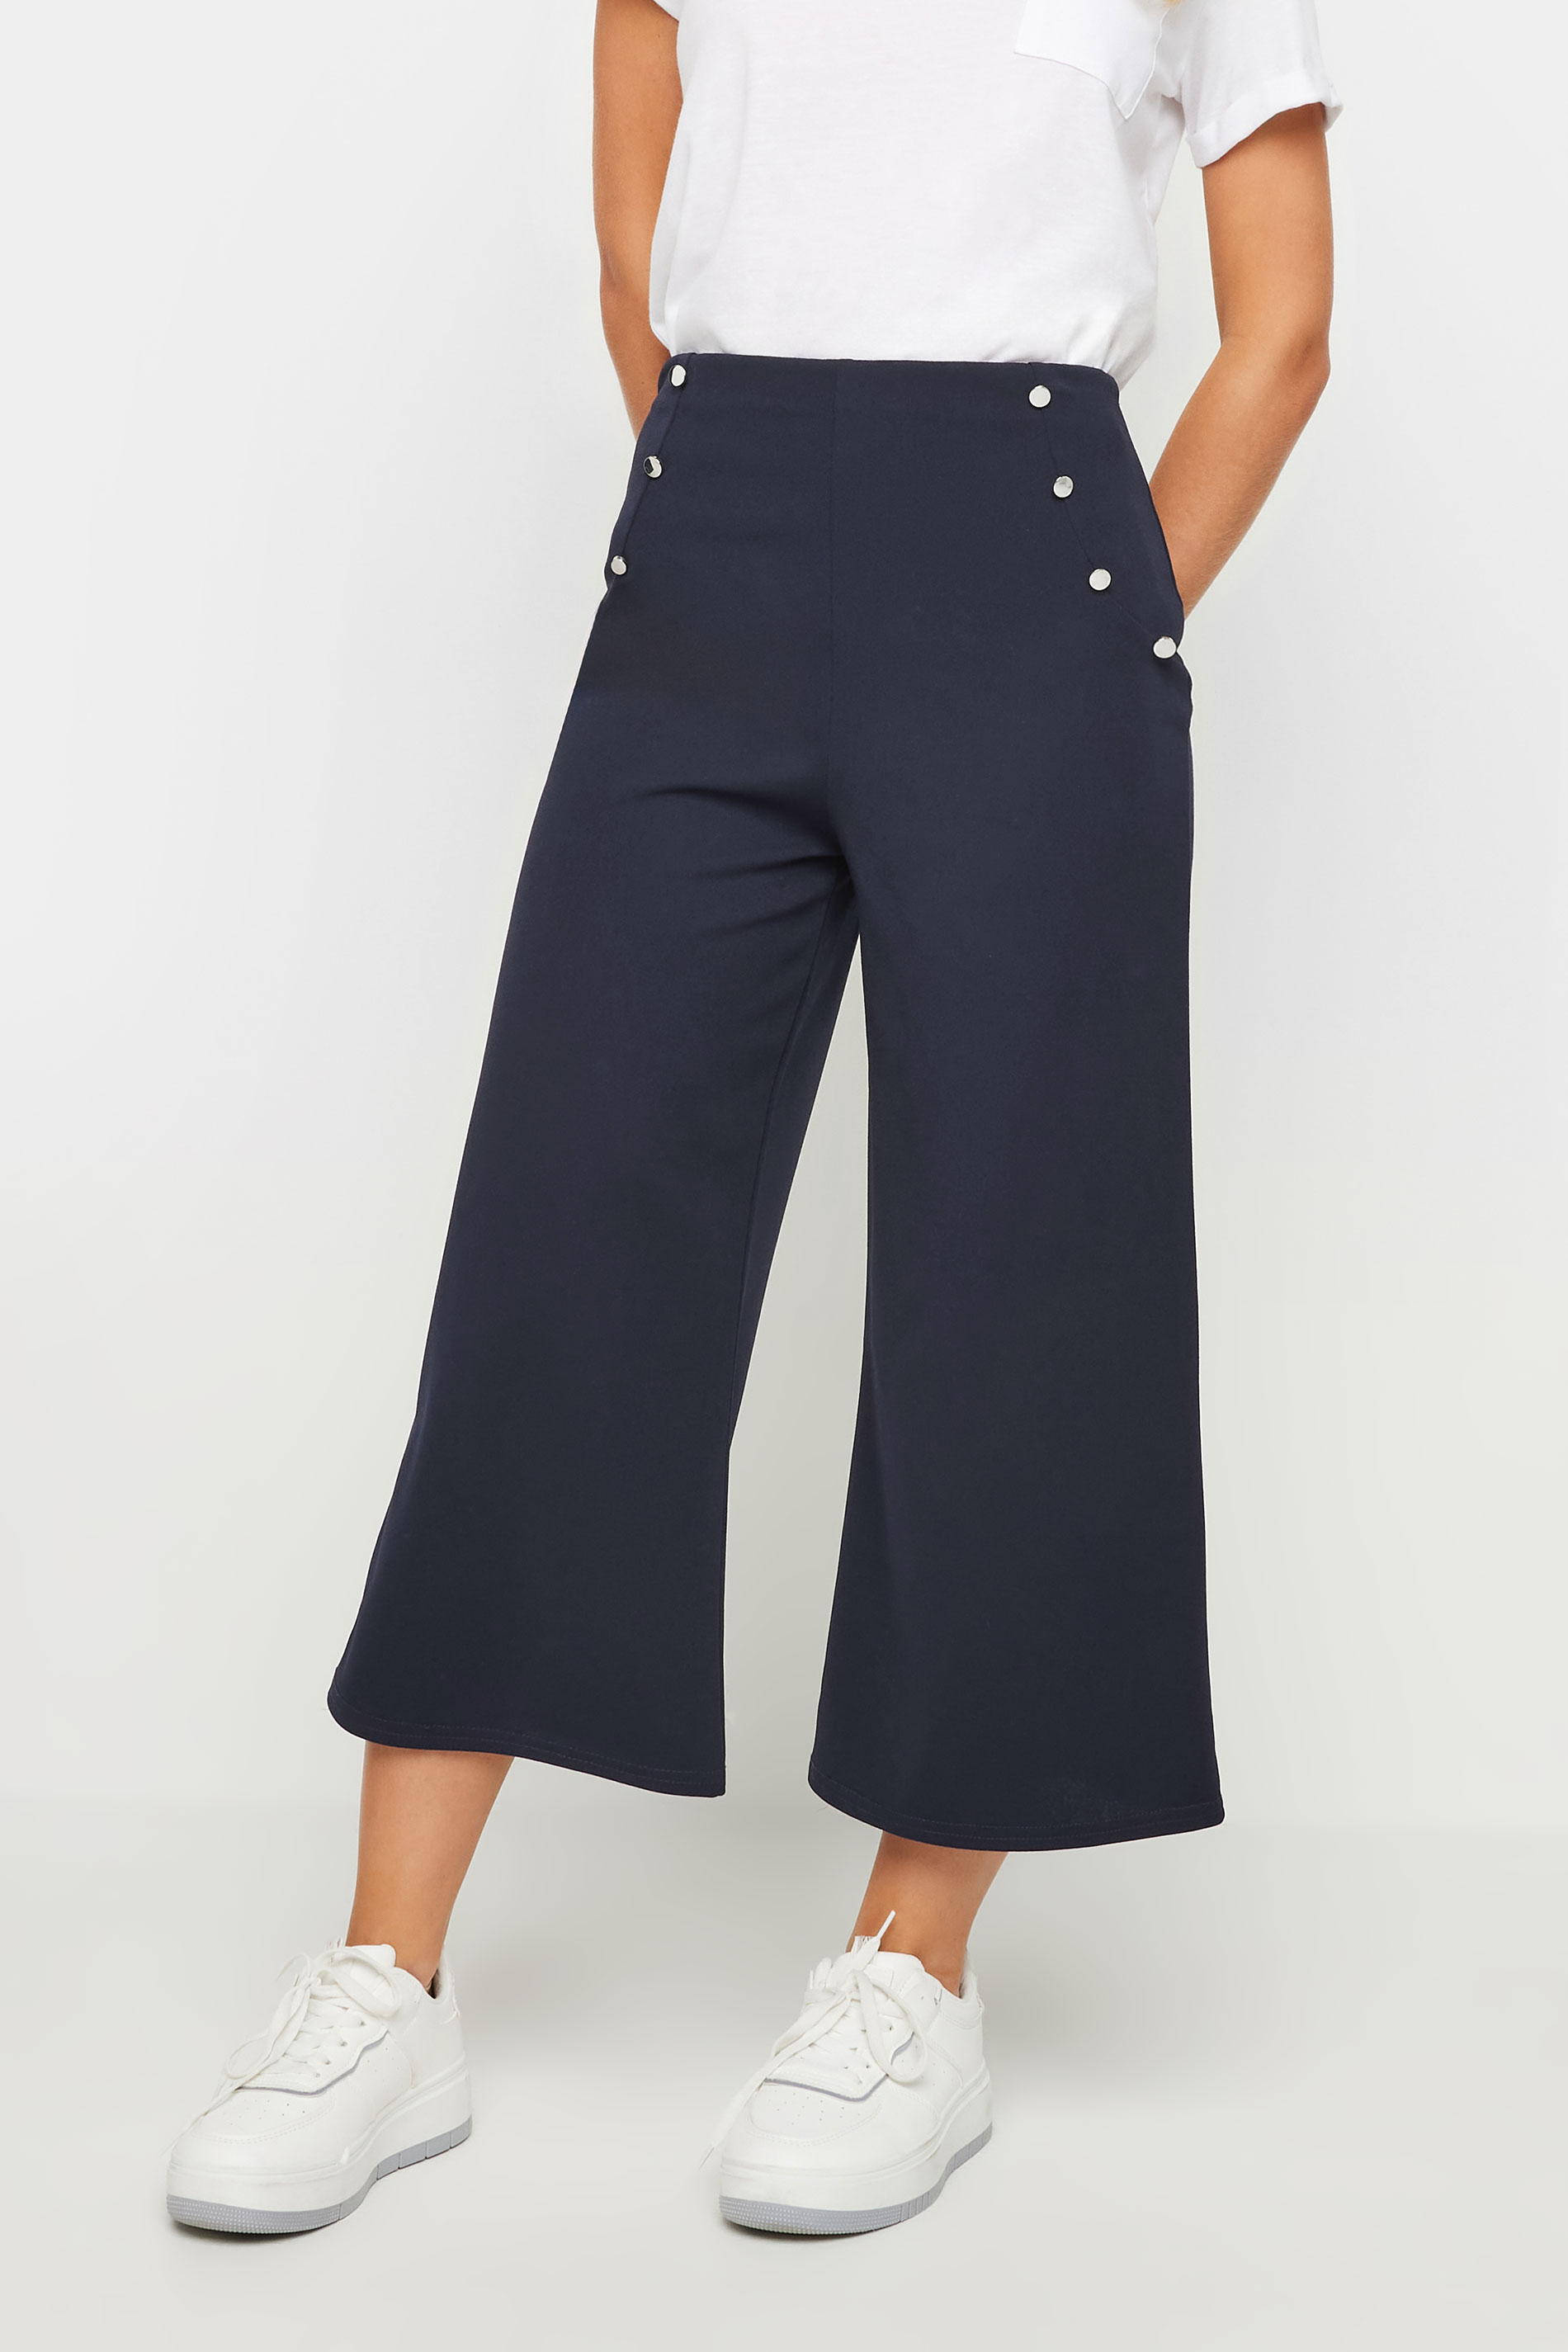 PixieGirl Petite Women's Navy Blue Button Detail Cropped Trousers | PixieGirl 2